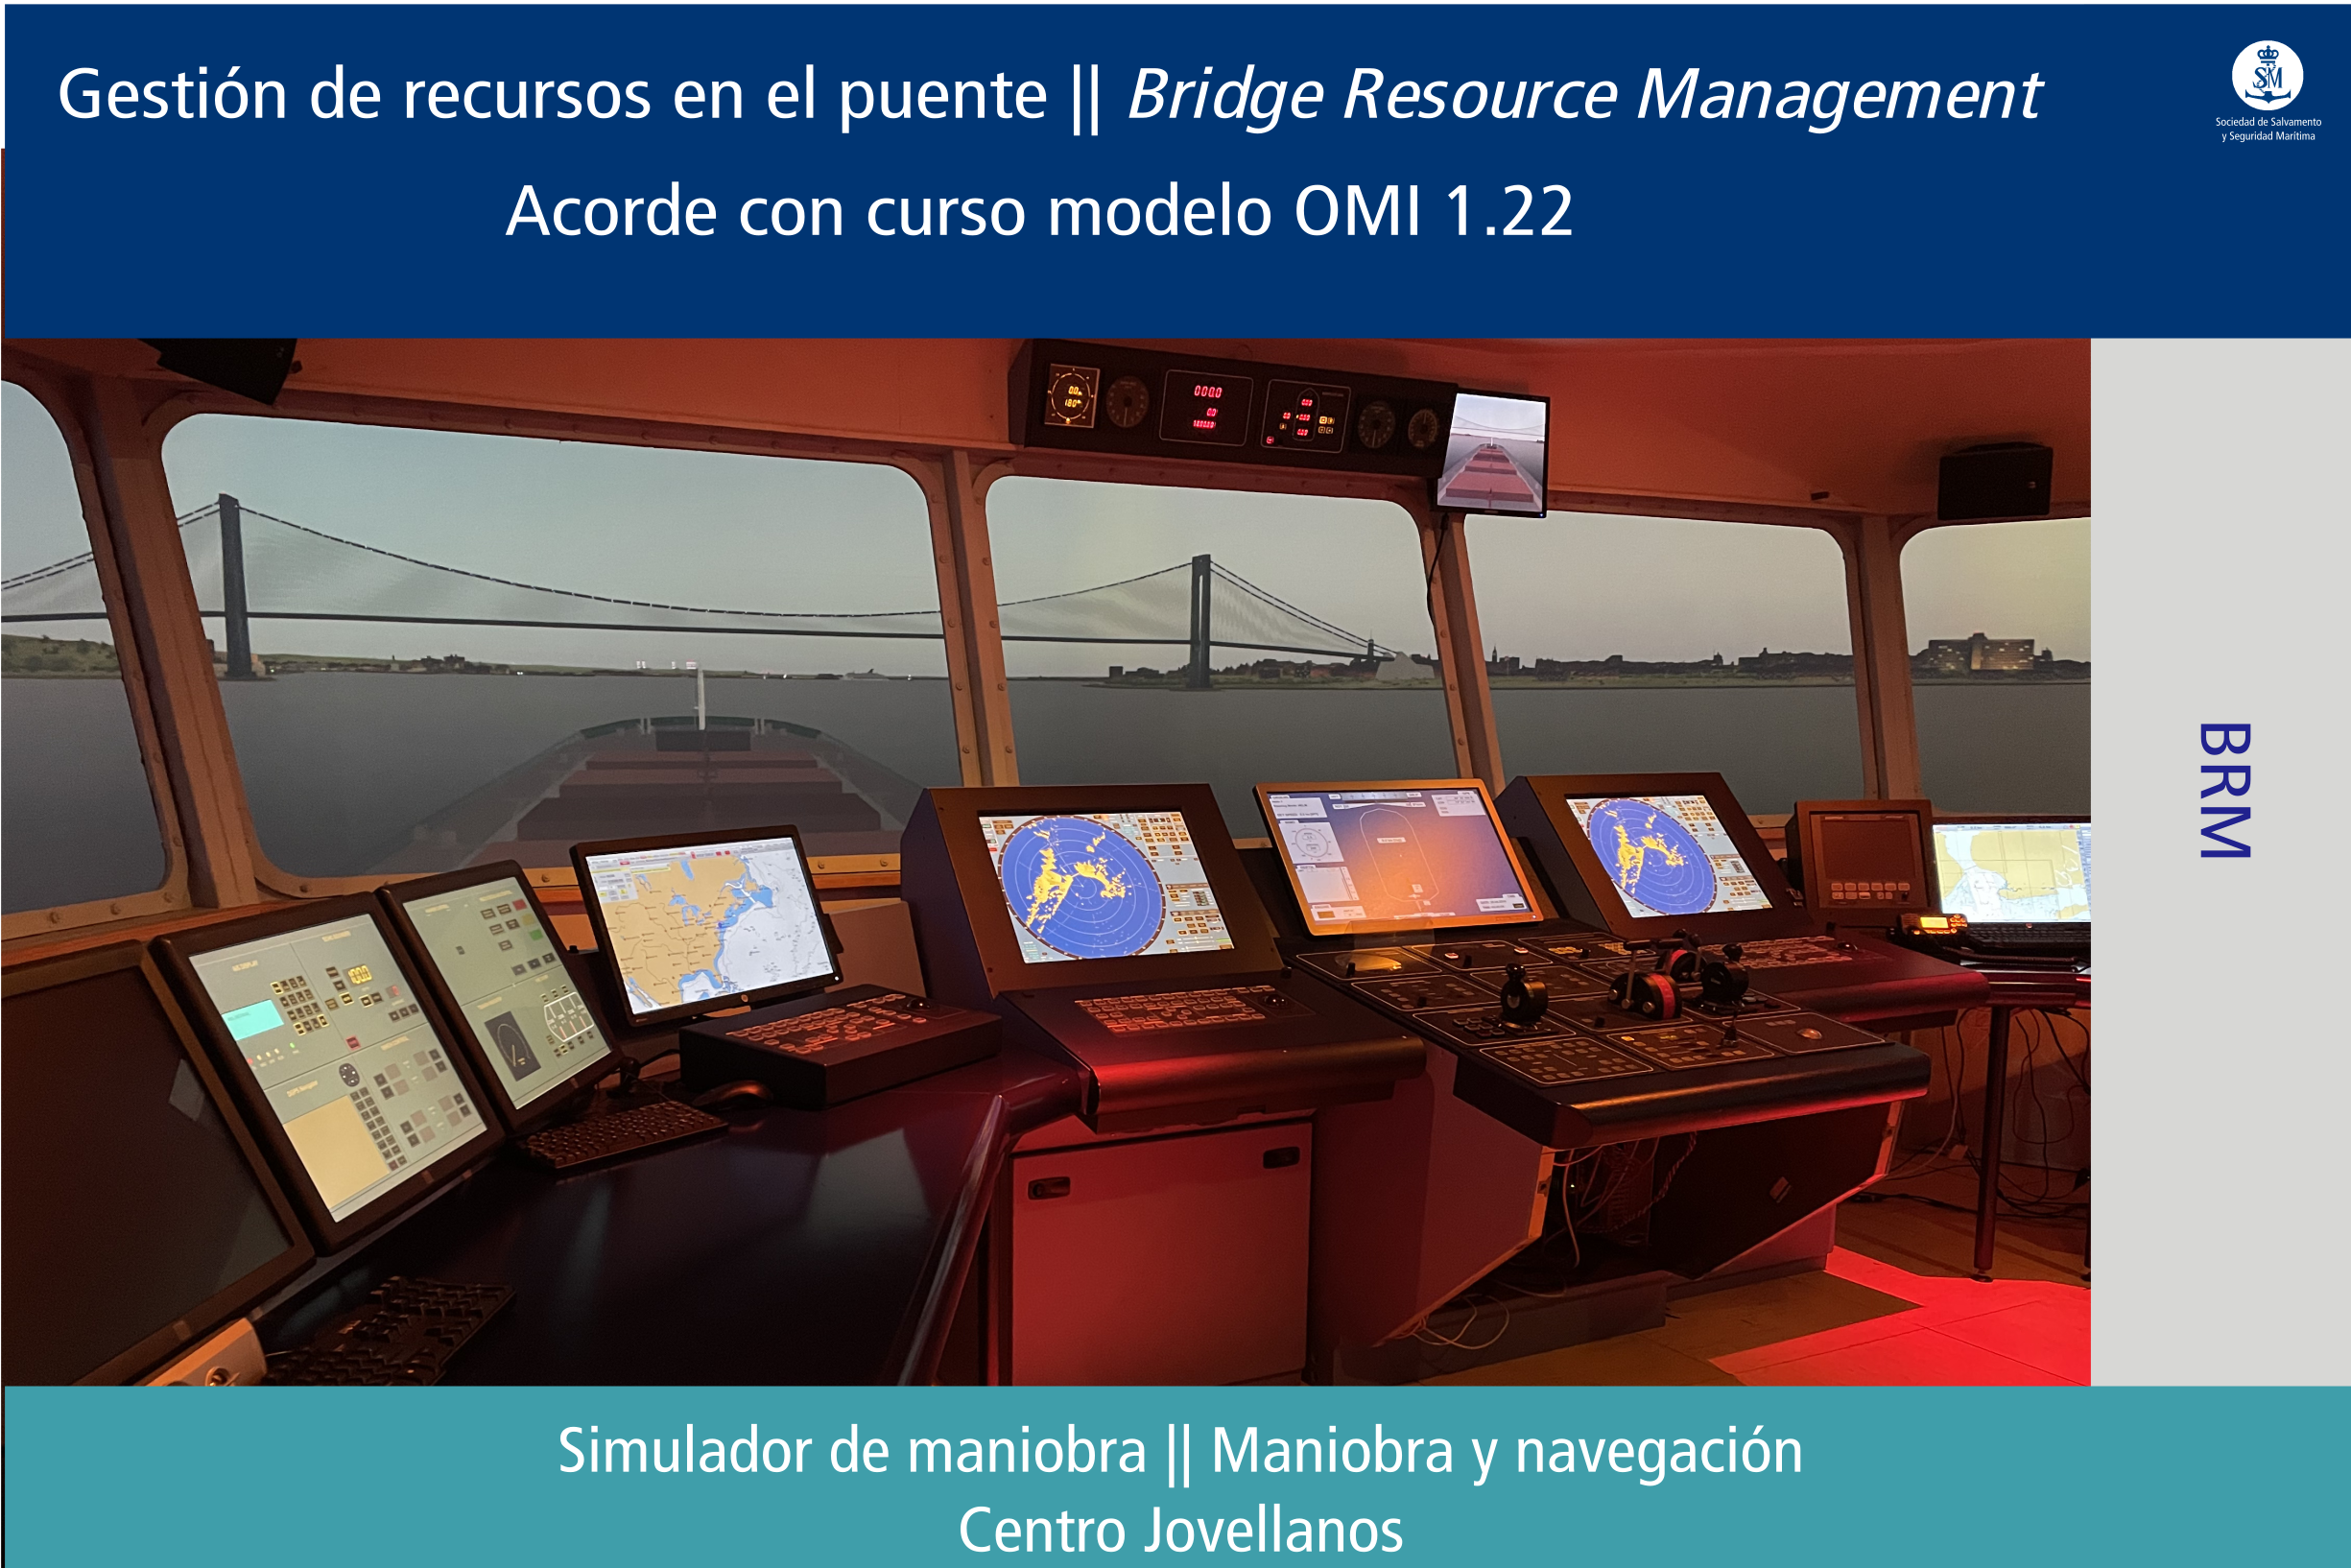 Gestión de recursos en el puente (BRM, curso modelo OMI 1.22)